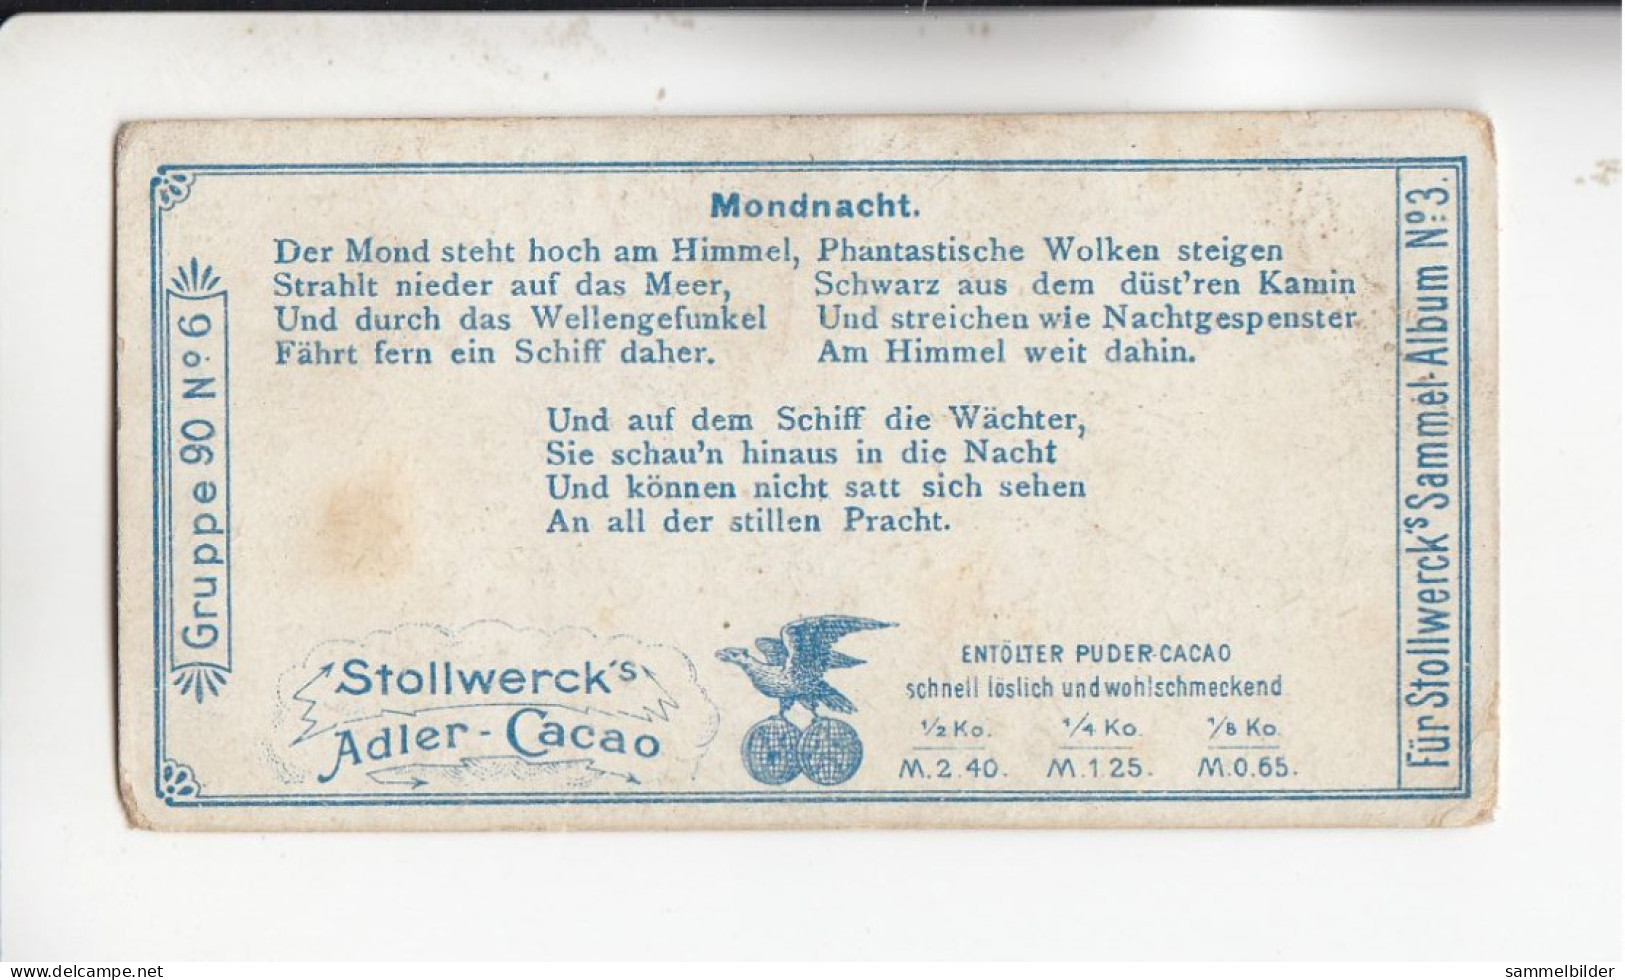 Stollwerck Album No 3 Von Der Wasserkante Mondnacht   Grp 90# 6 Von 1899 - Stollwerck